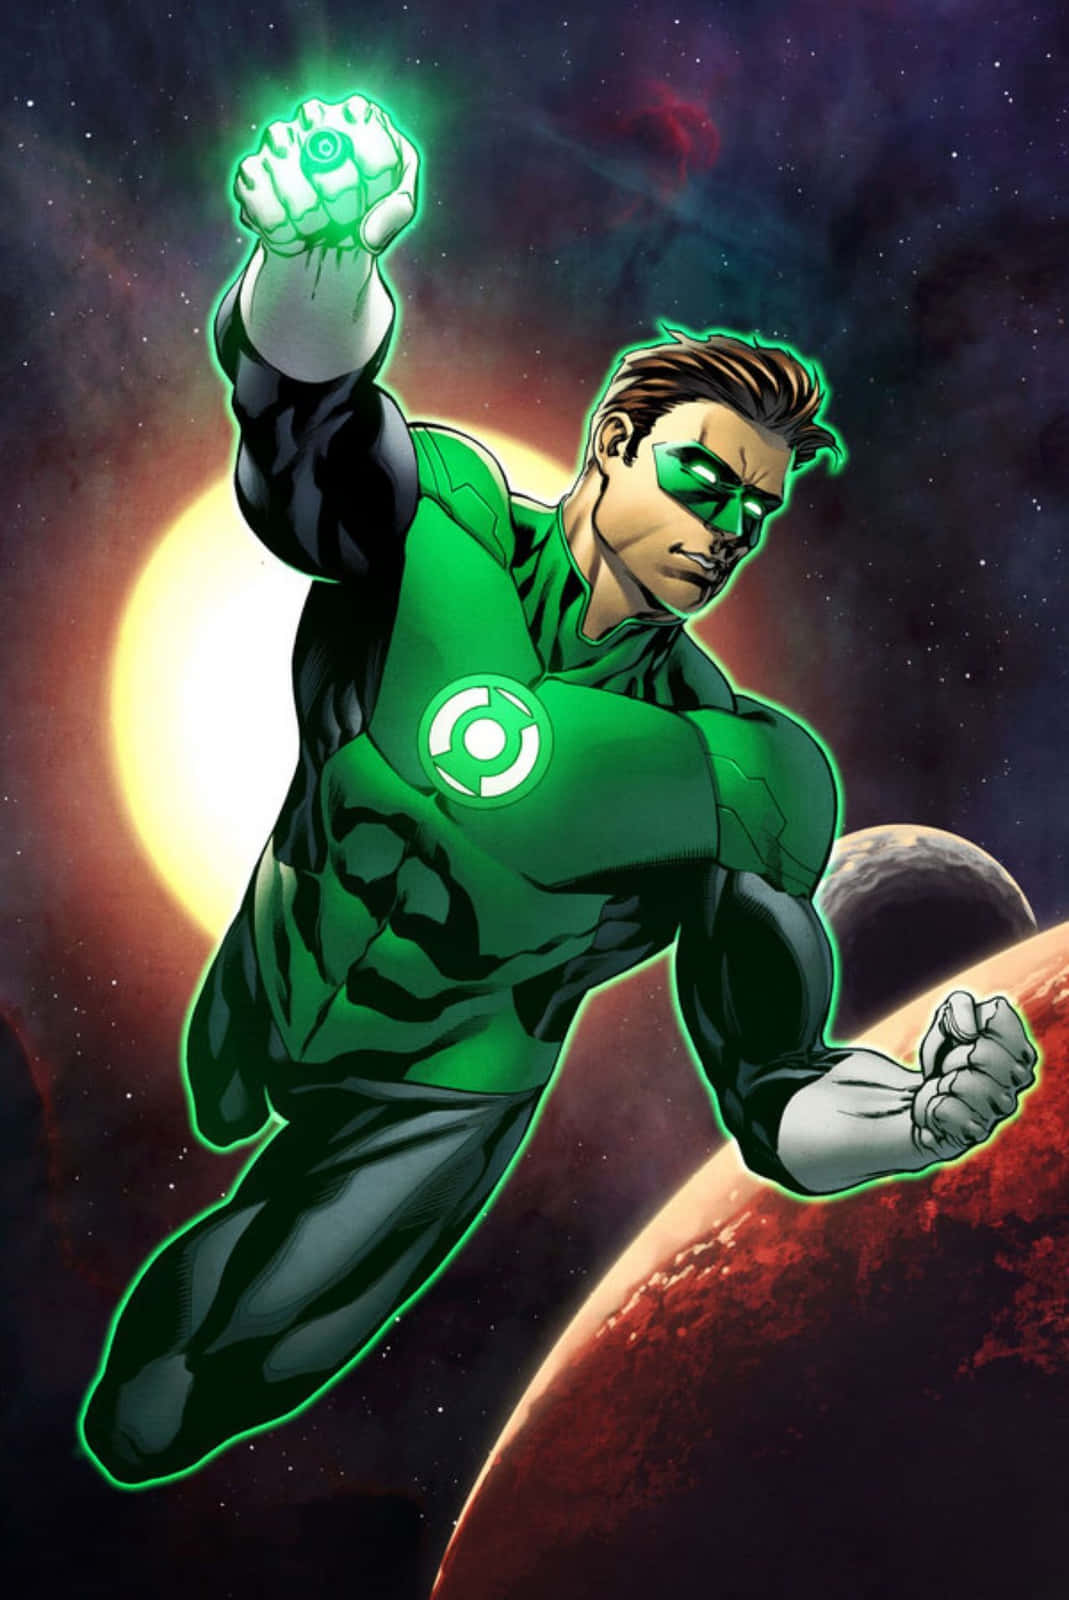 Einbeeindruckendes Und Farbenfrohes Bild Des Green Lantern Symbols.